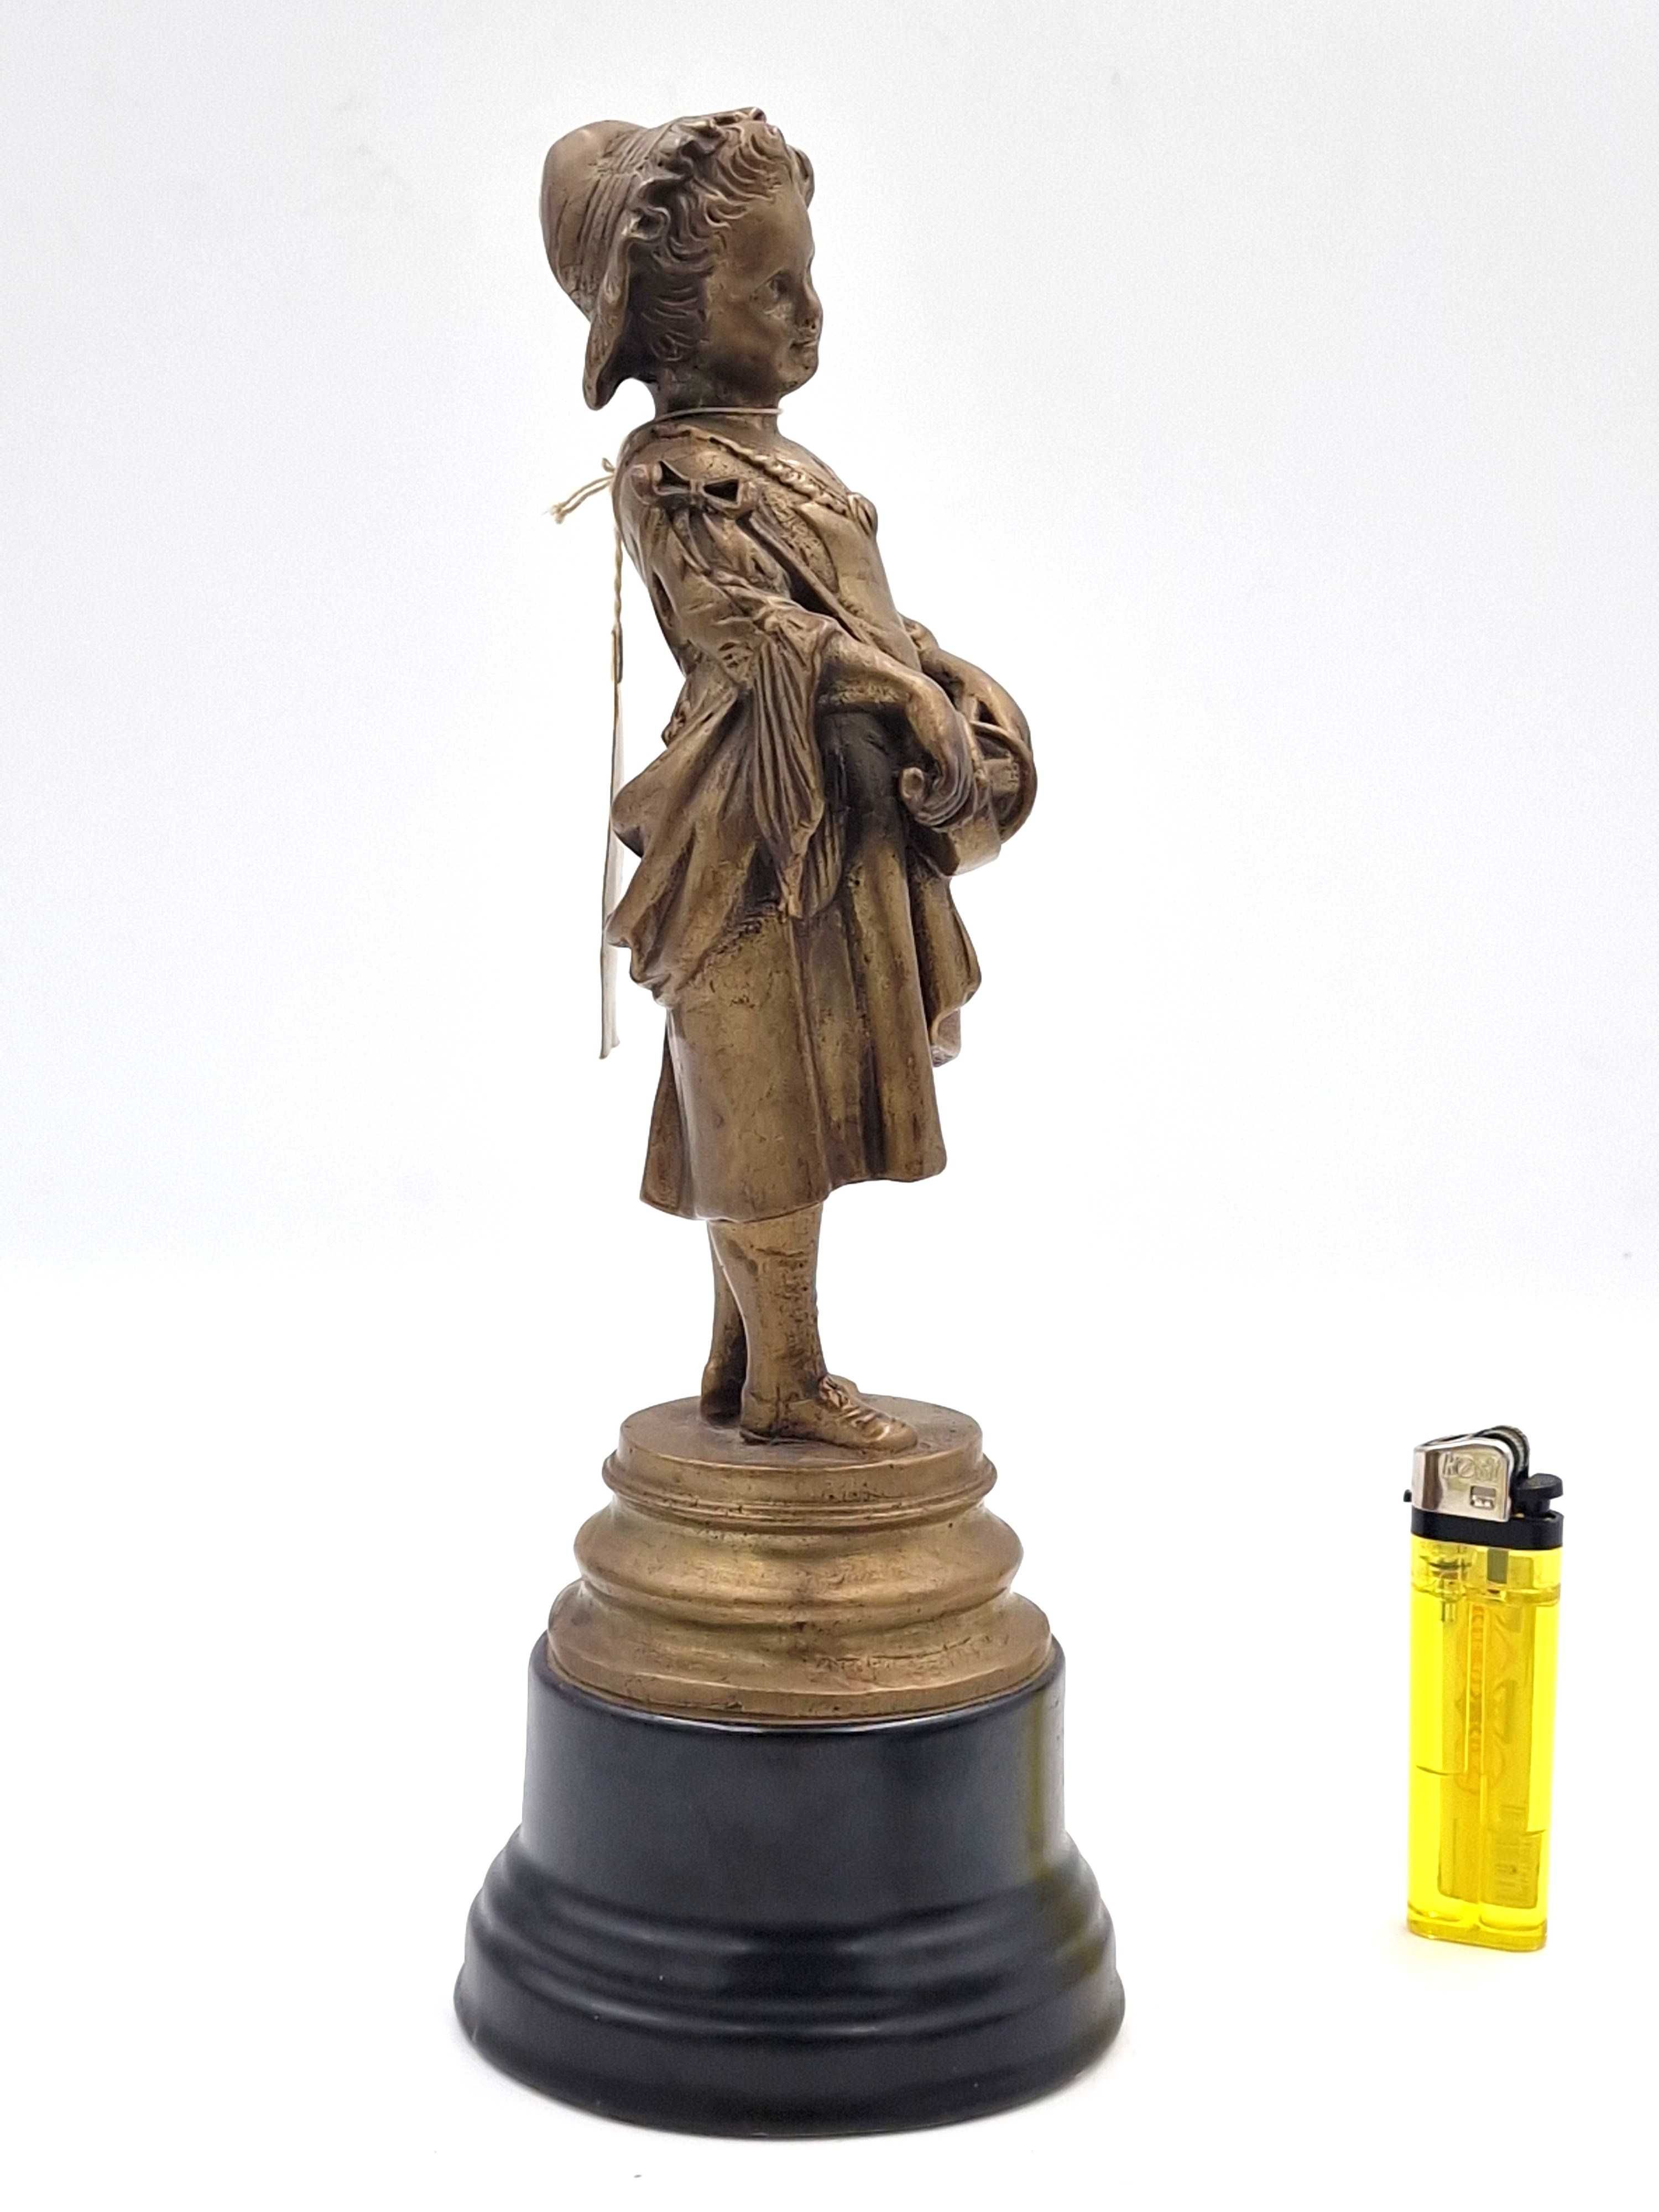 Rzeźba przedstawia dziewczynkę trzymającą w rękach